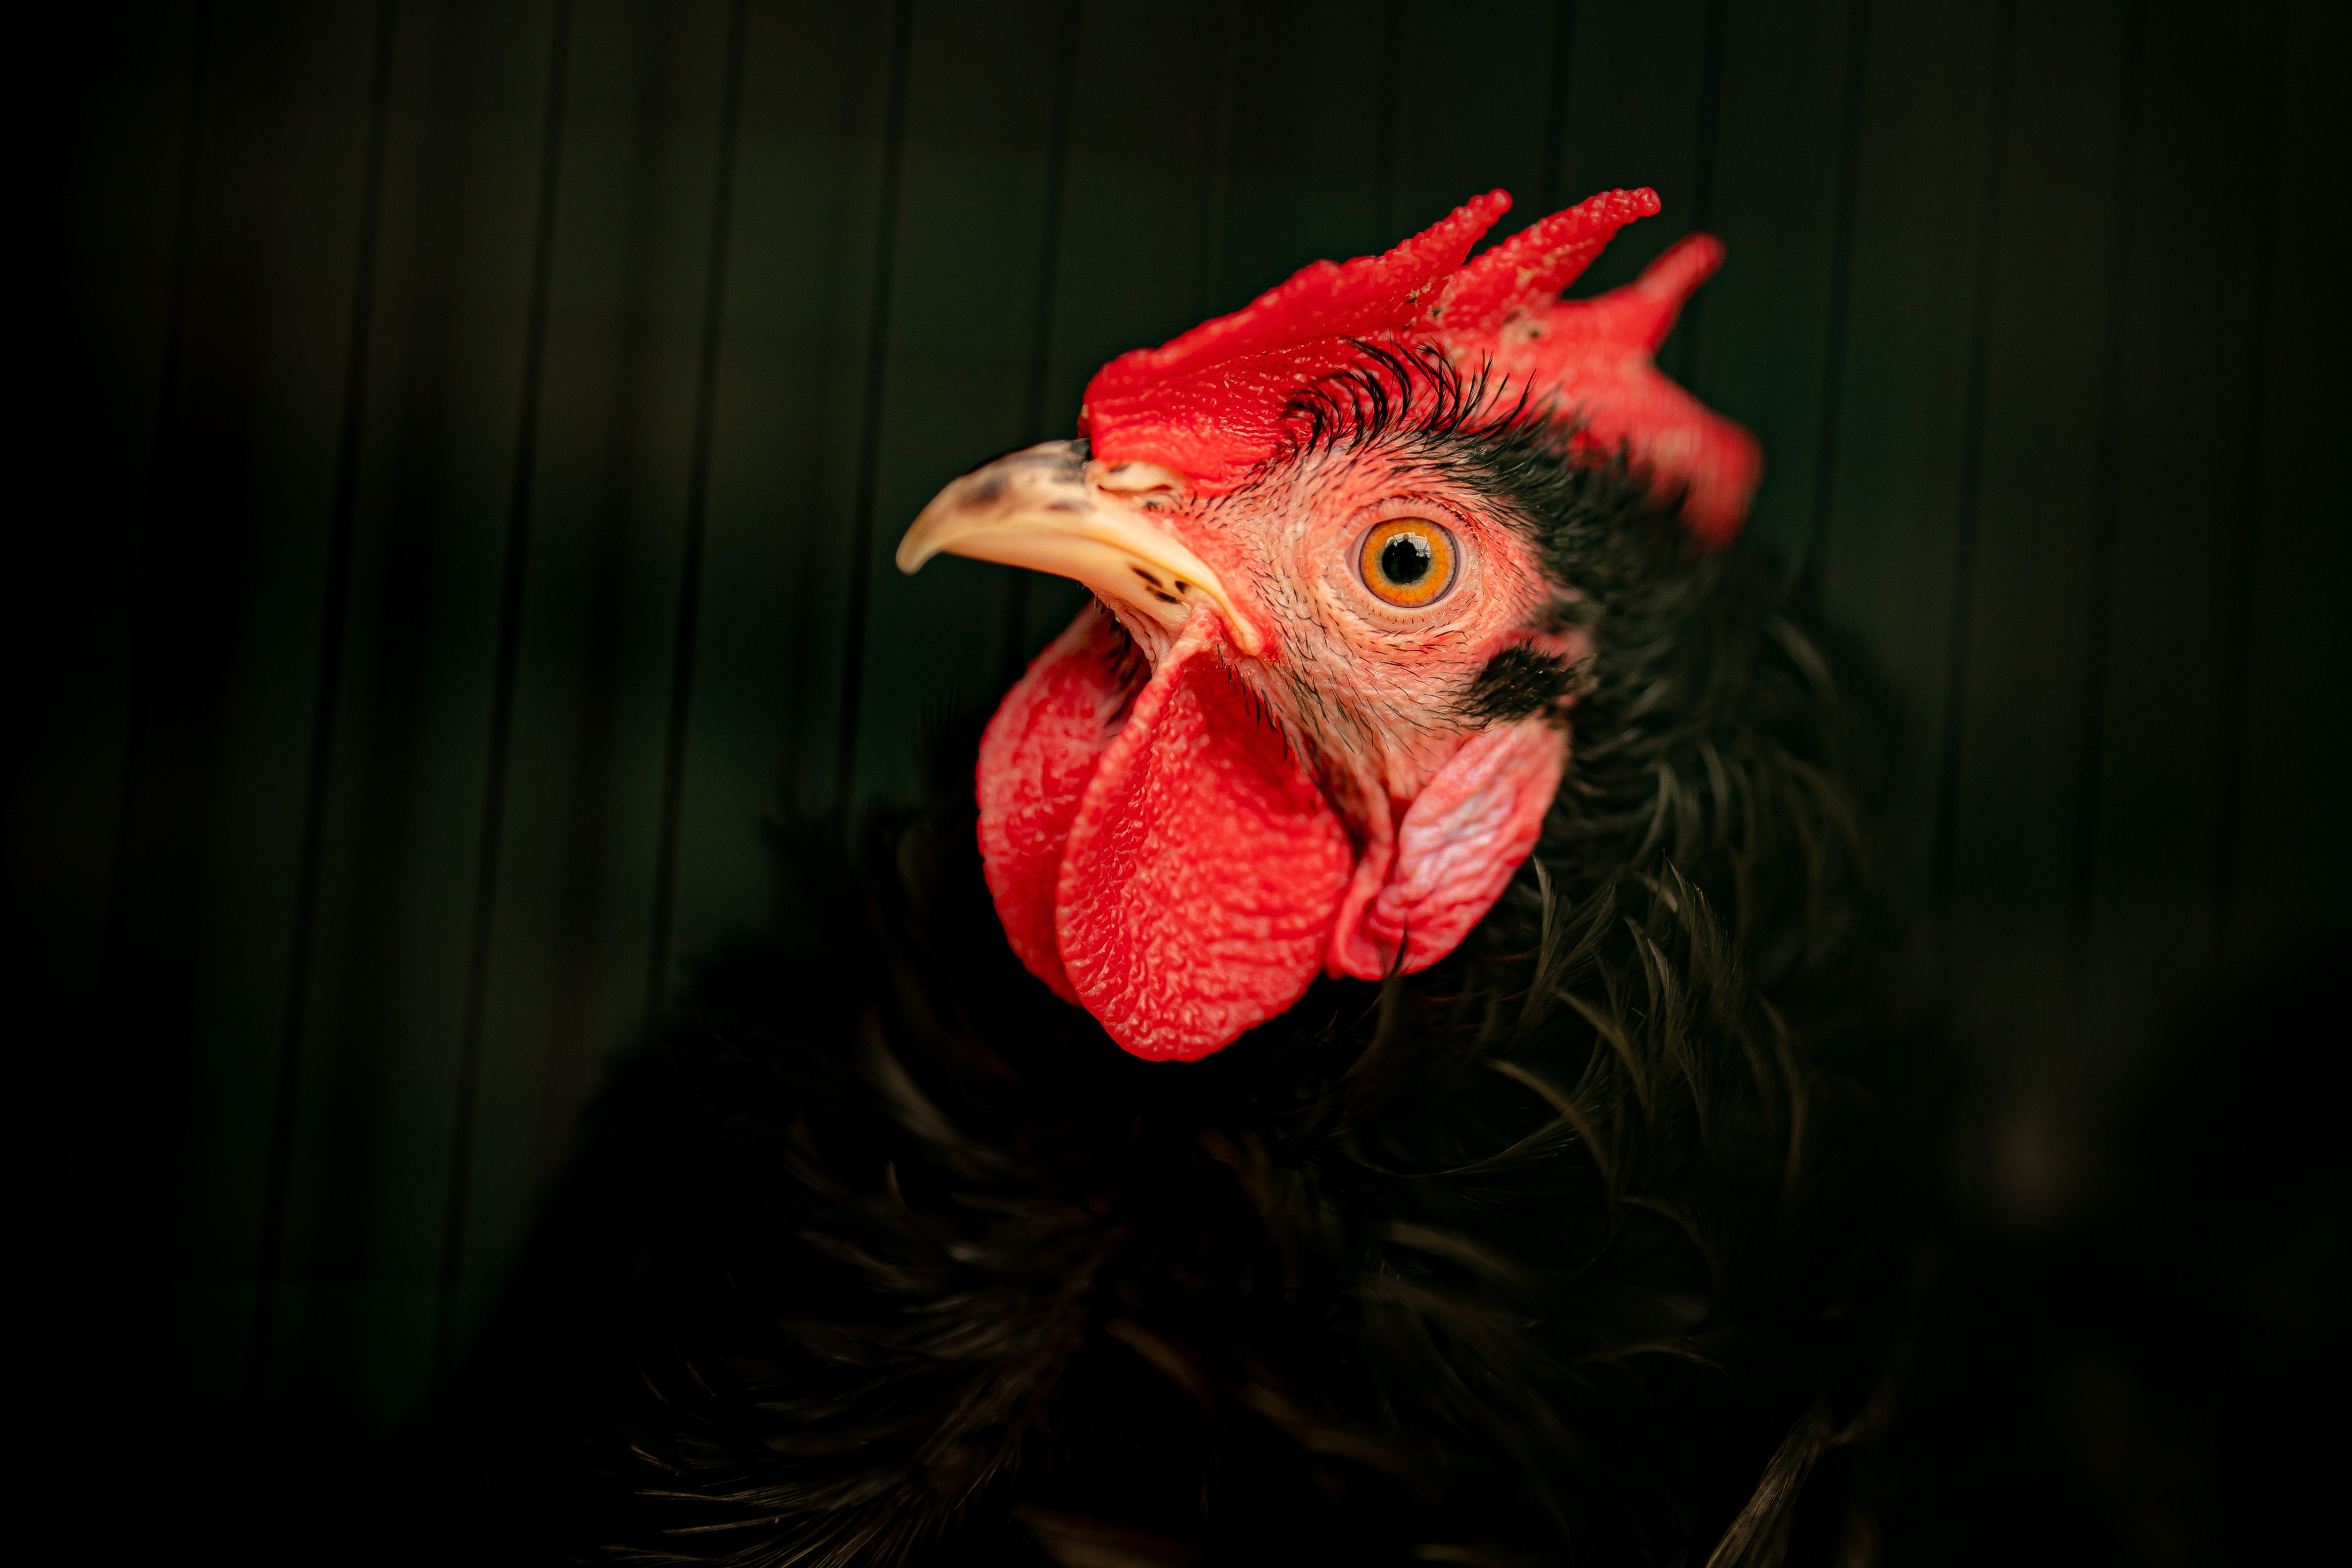 La gripe aviar llega a Catalunya: ¿puede infectar a los humanos? Transmisión, síntomas y tratamiento